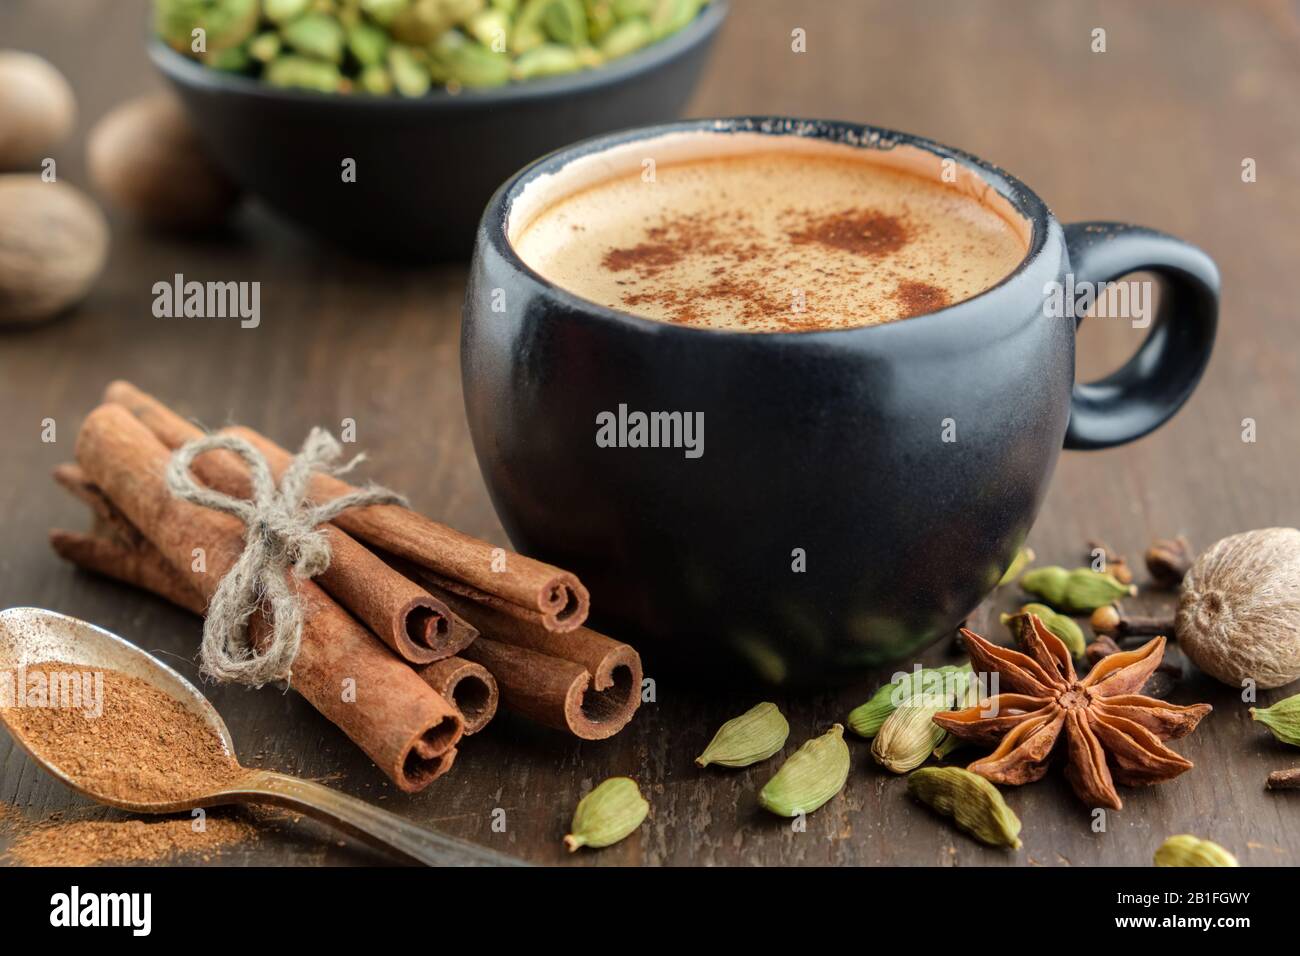 Tasse gesunden ayurvedischen Masala-Tee oder Kaffee, heiße Schokolade mit aromatischen Gewürzen. Zimtstangen, Kardamom, allspices und Anis. Stockfoto